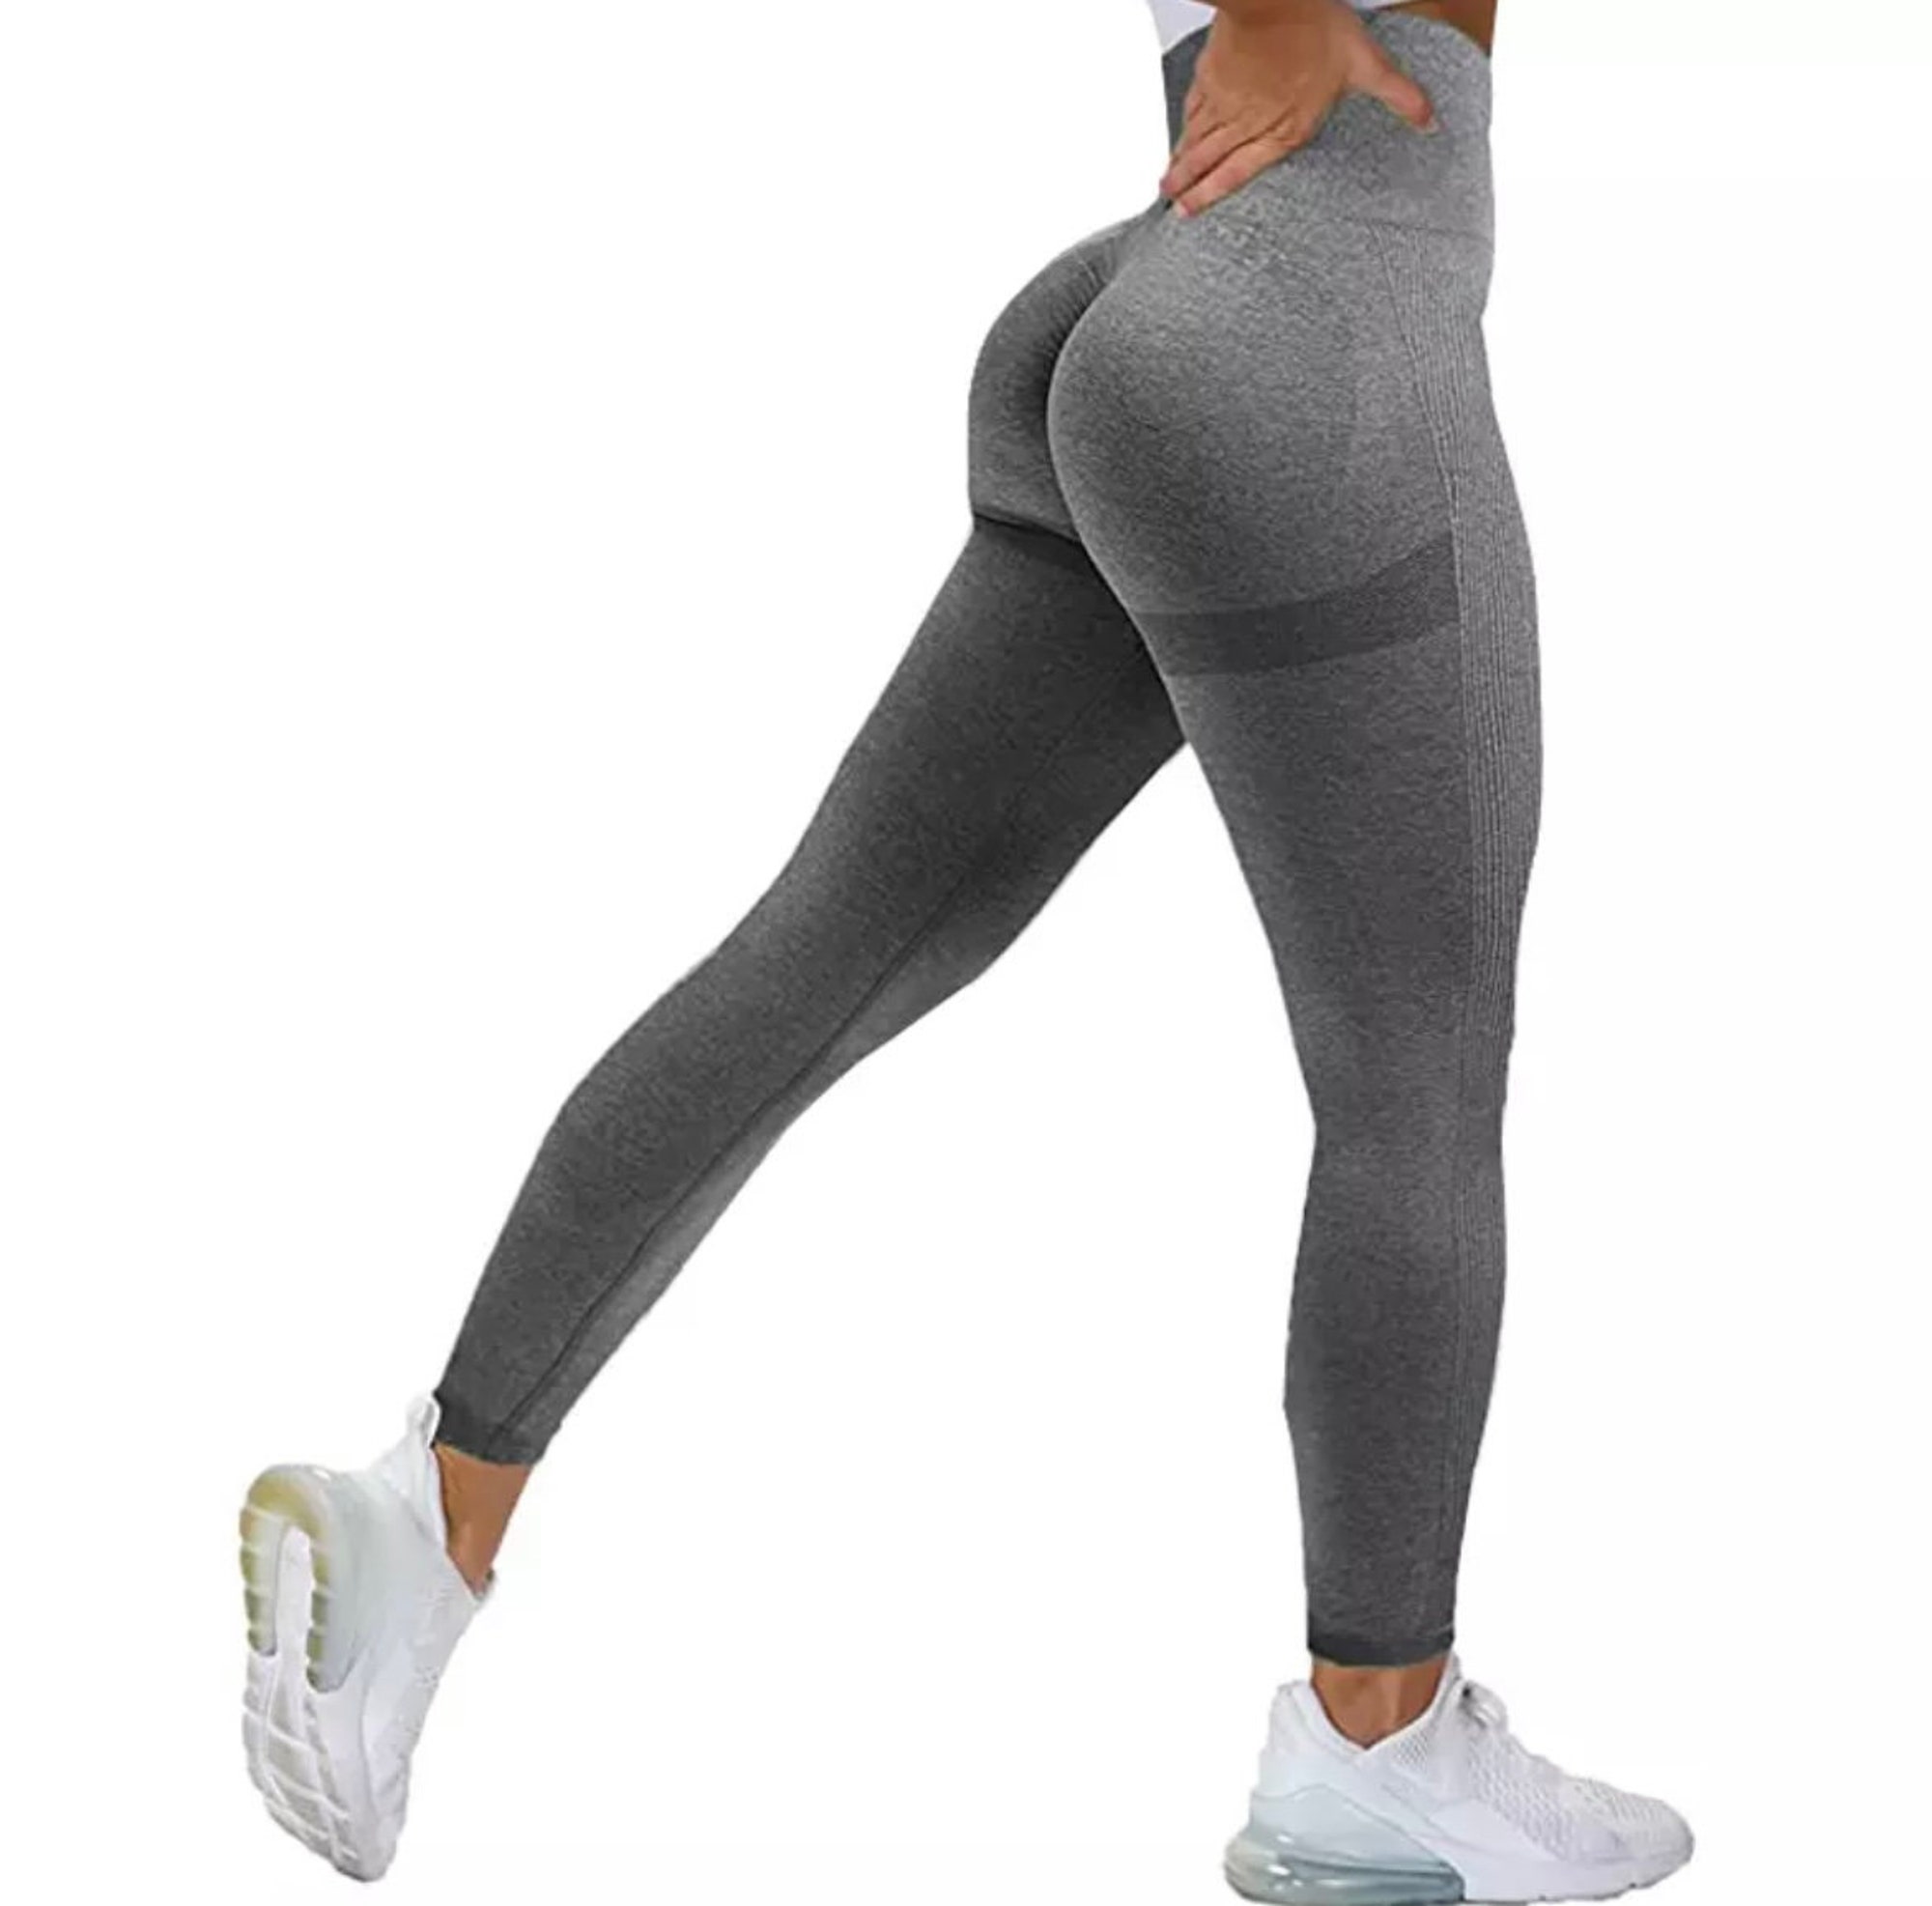 High waist workout leggings